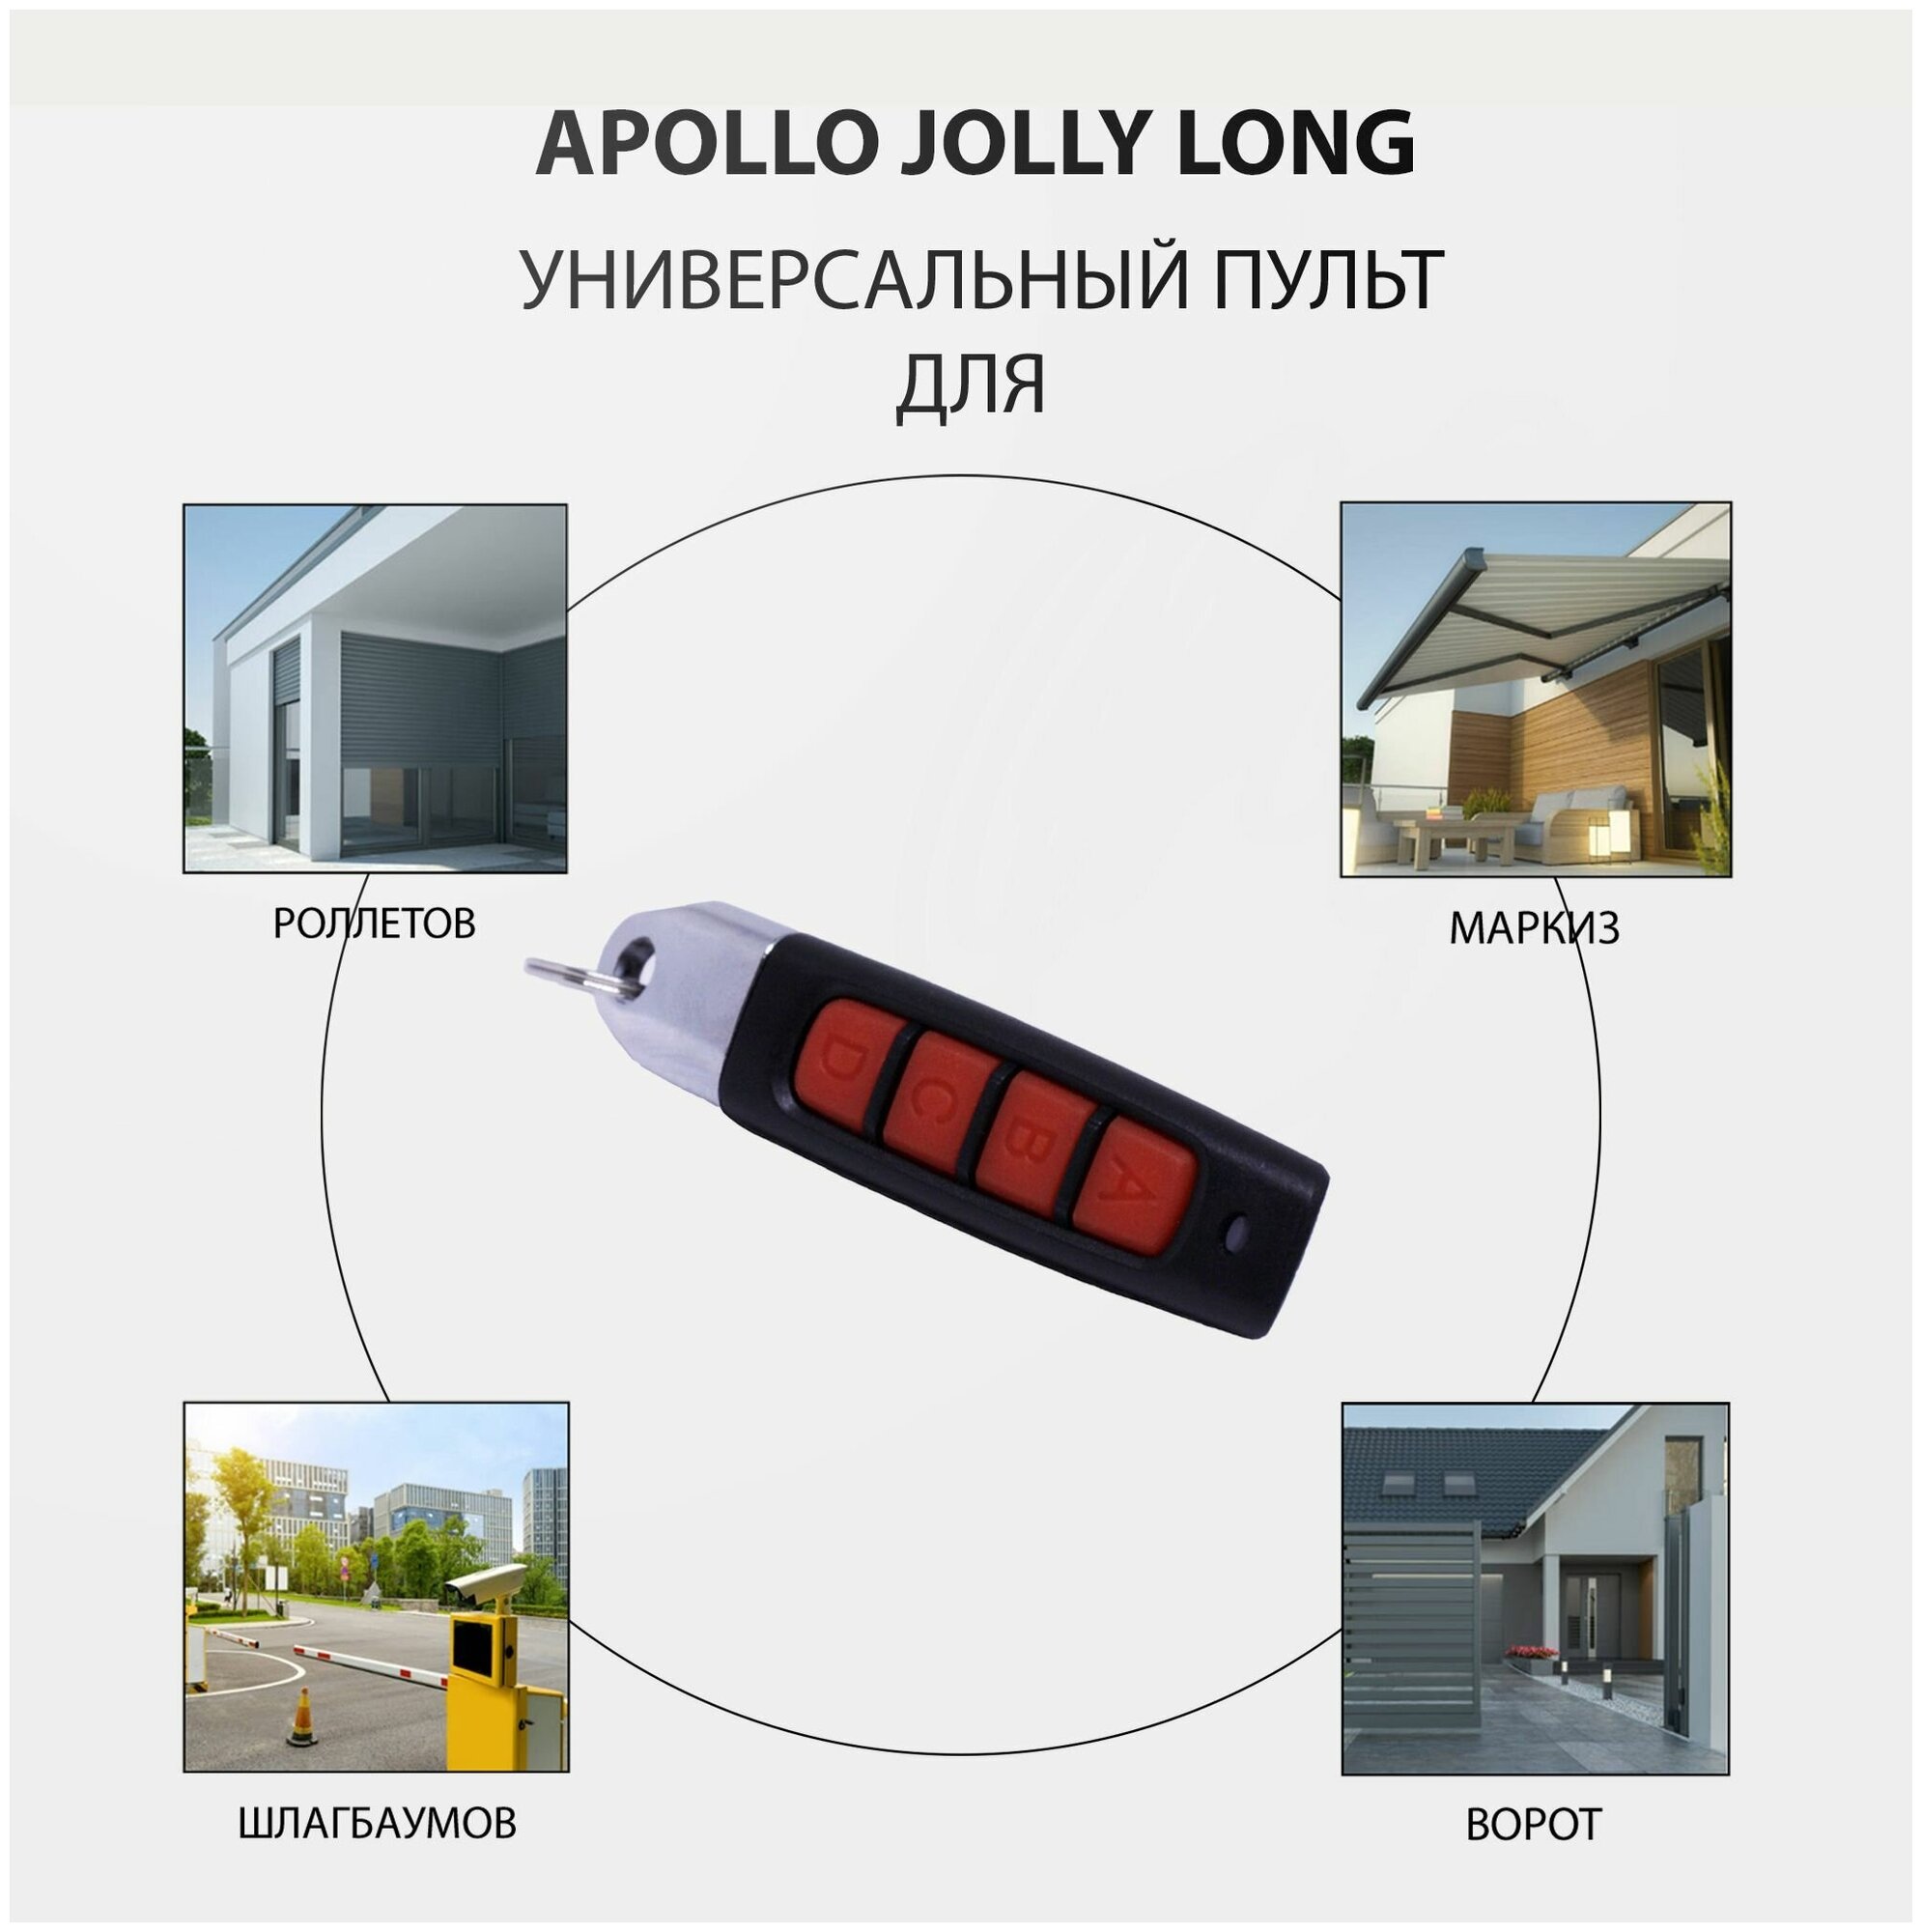 Пульт Apollo Jolly Long для ворот, шлагбаумов, роллет и маркиз. Универсальный, четырехканальный. Частота 433 МГц